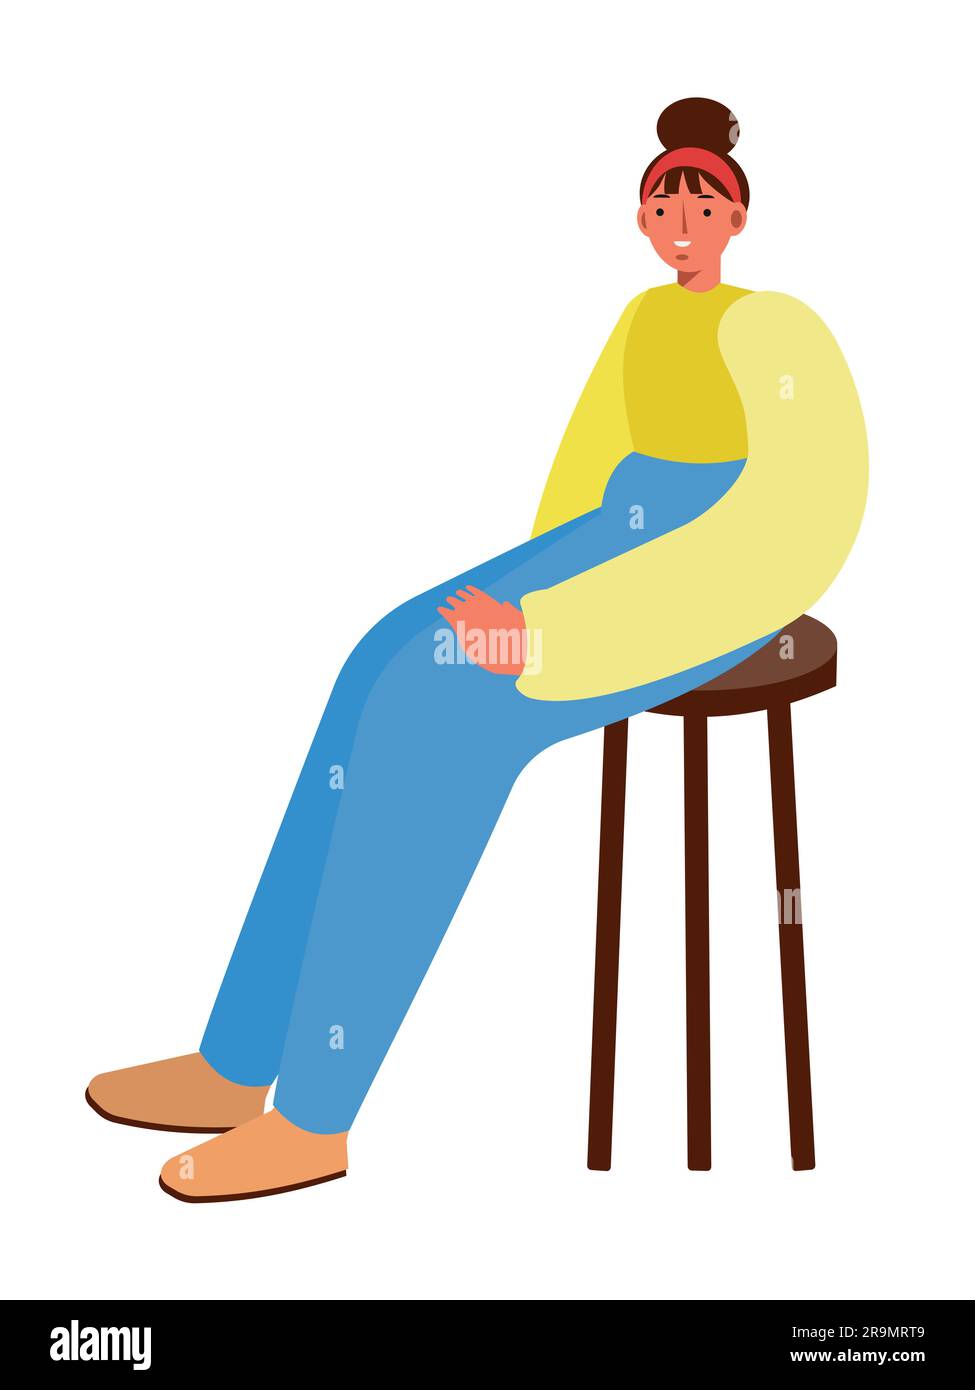 Donna seduta su uno sgabello alto. Posa tranquilla e confortevole, pantaloni femminili e giacca a manica lunga. Proporzioni distorte illustrazione vettoriale isolata. Illustrazione Vettoriale